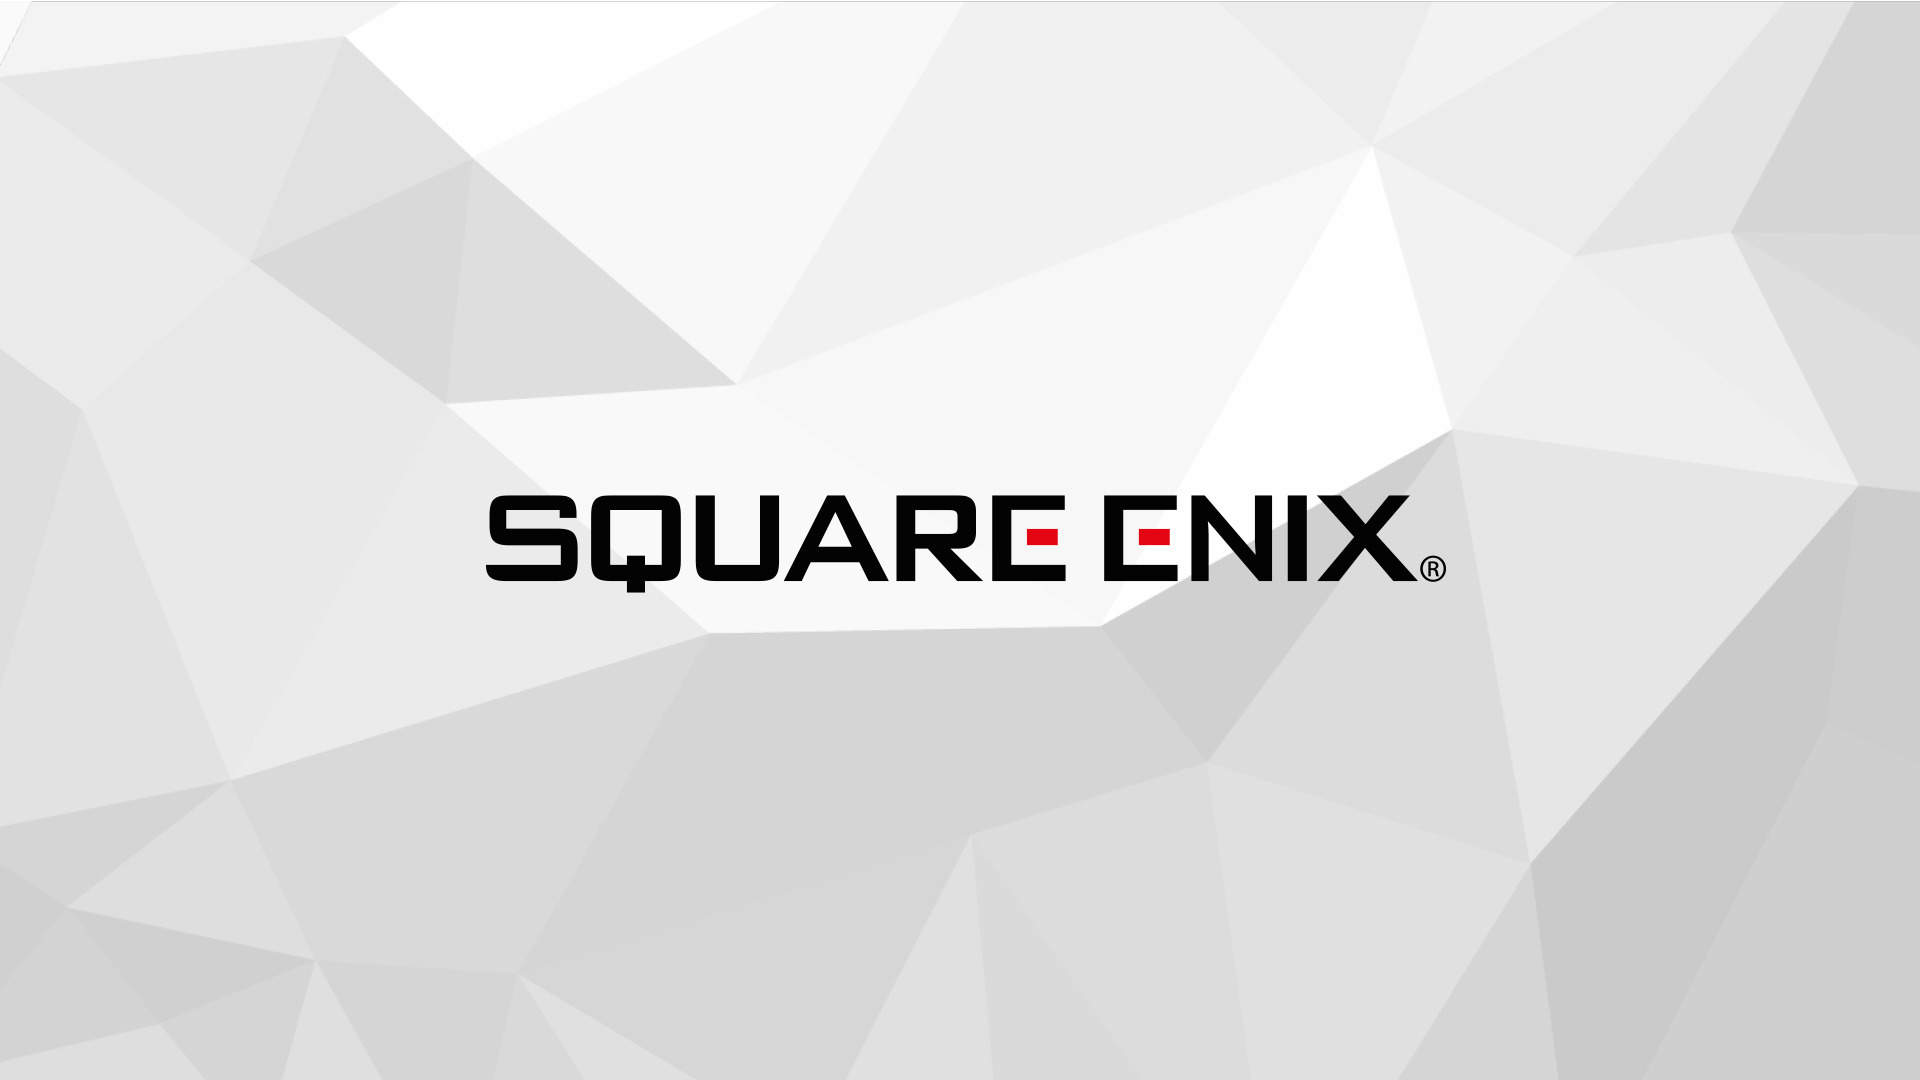 #Square Enix plant, ausgewählte bestehende Marken auf AAA-Status hochzustufen